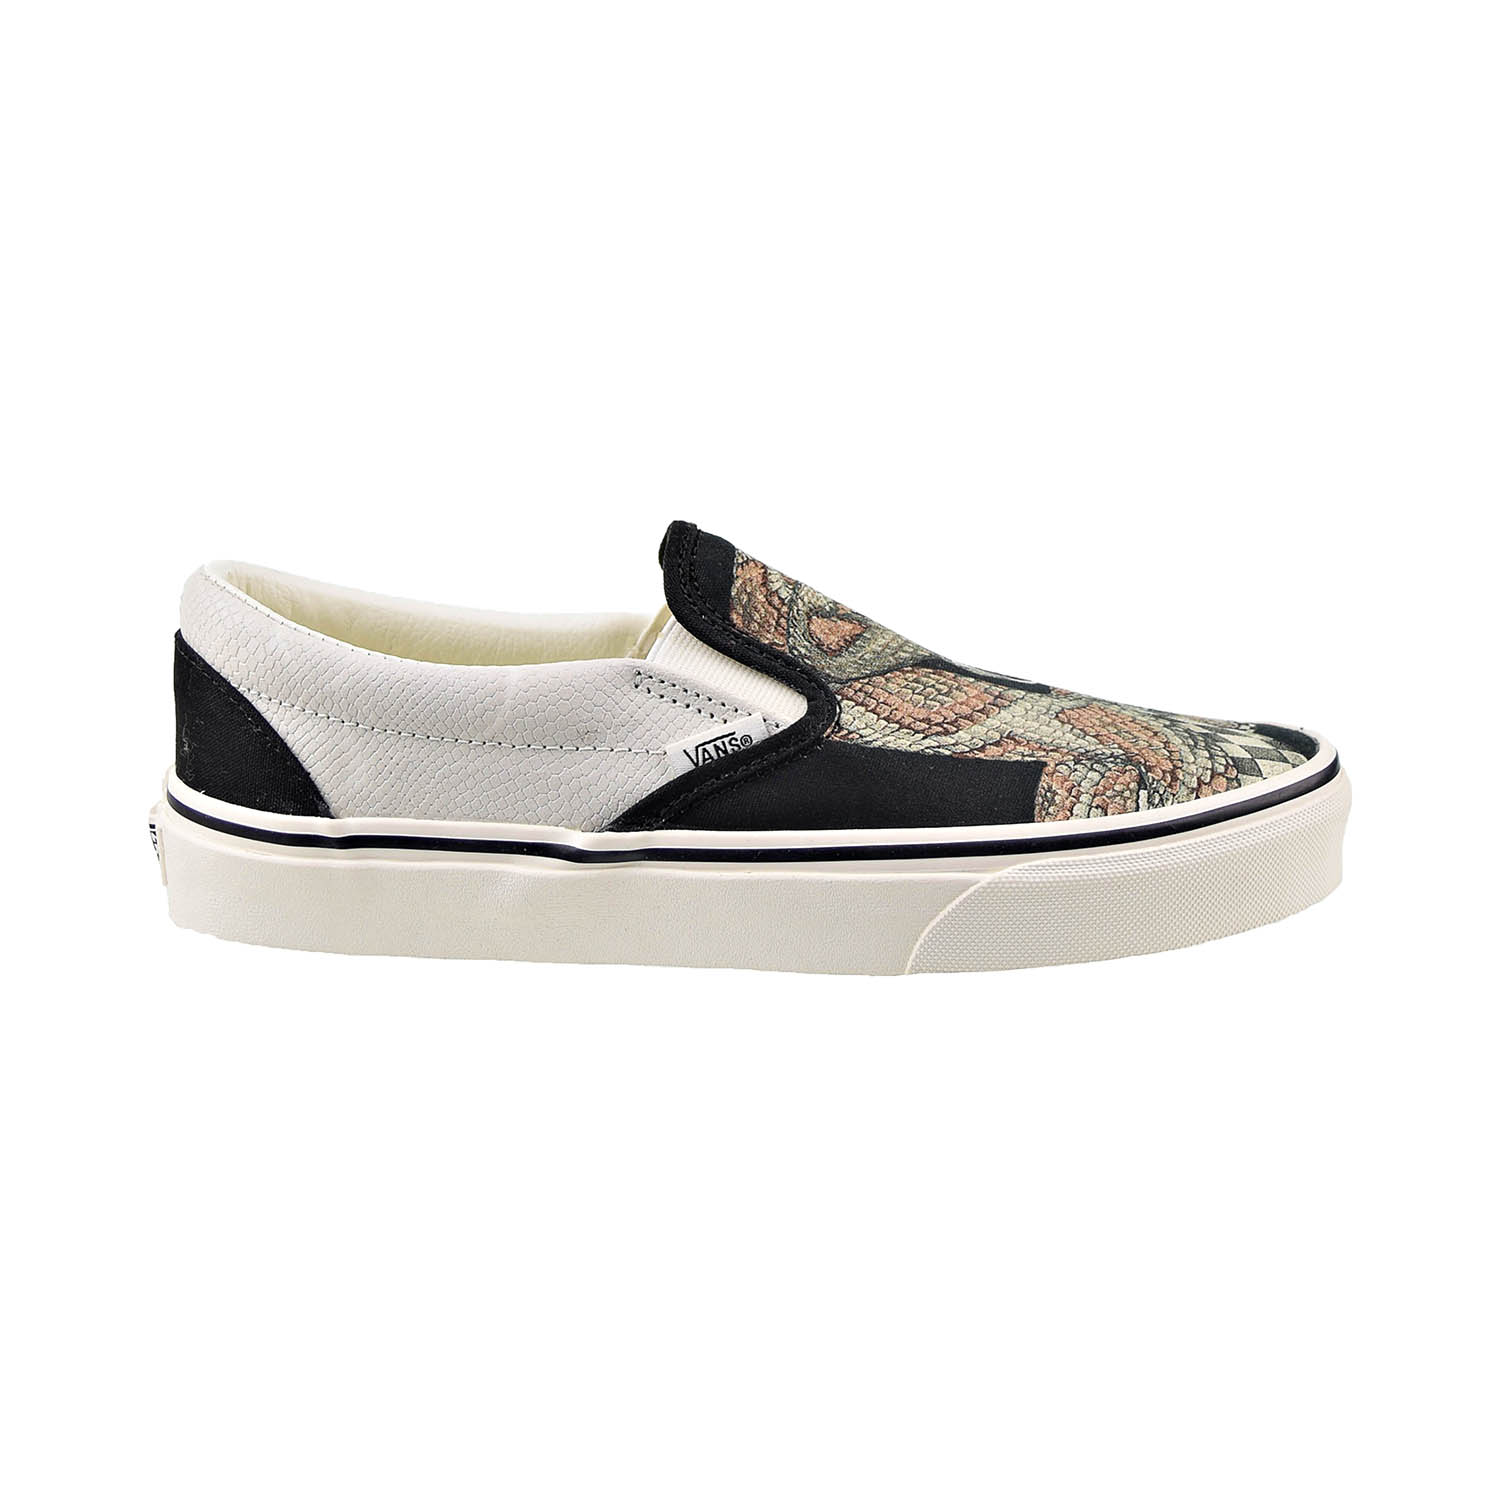 Vans Classic Slip-On Men's Shoes Desert Snake-Black vn000xg8-b02